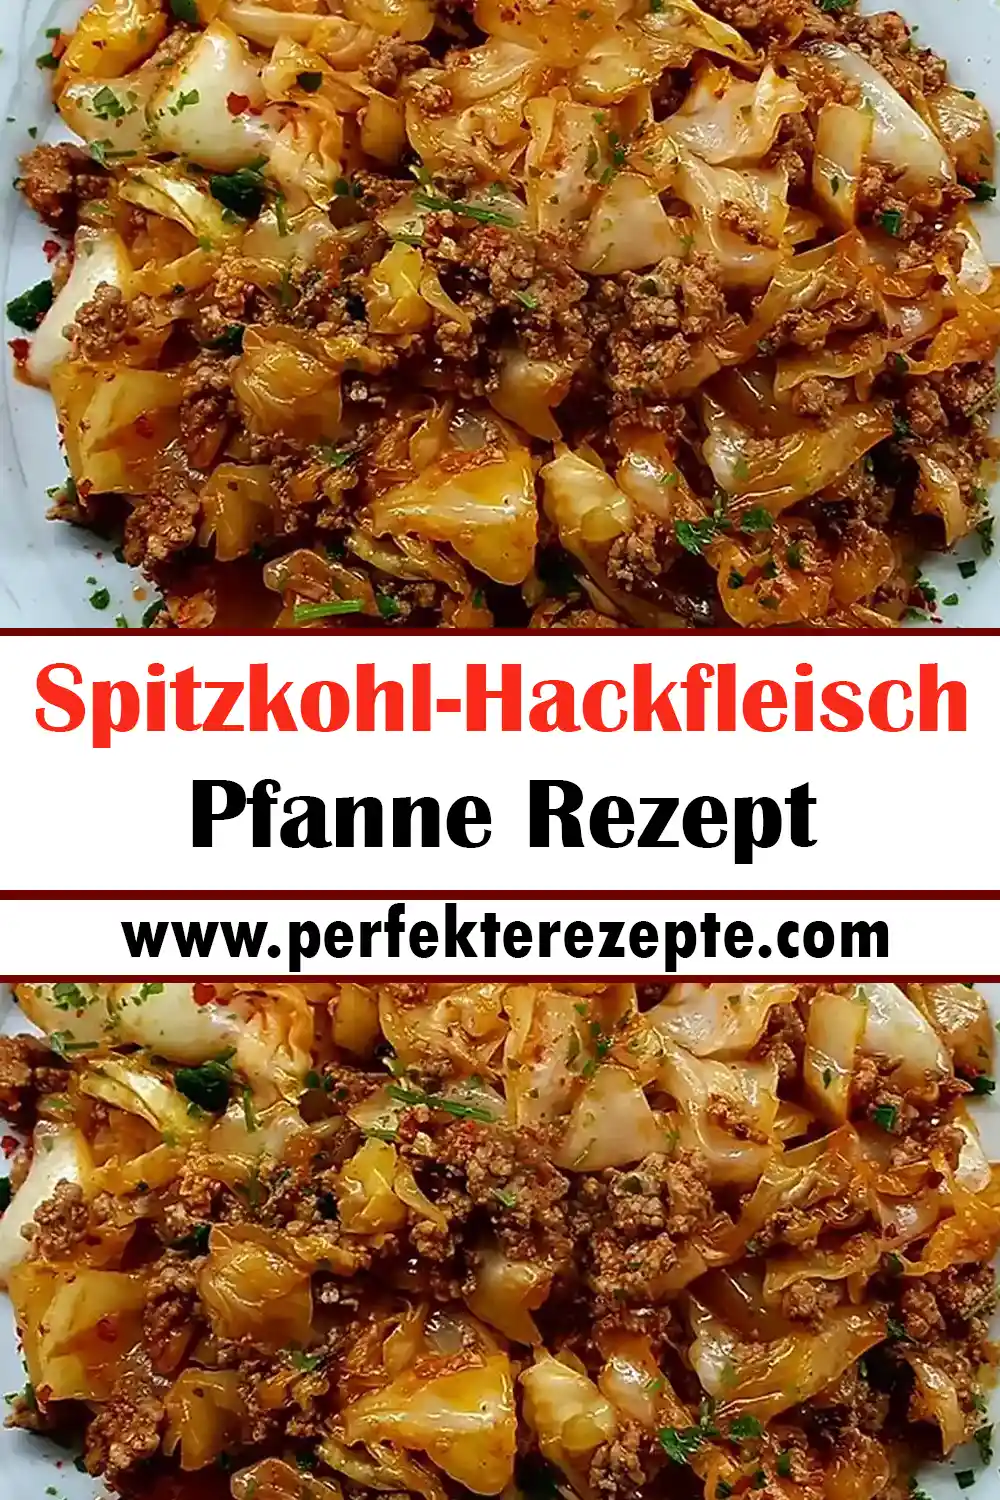 Spitzkohl-Hackfleisch-Pfanne Rezept